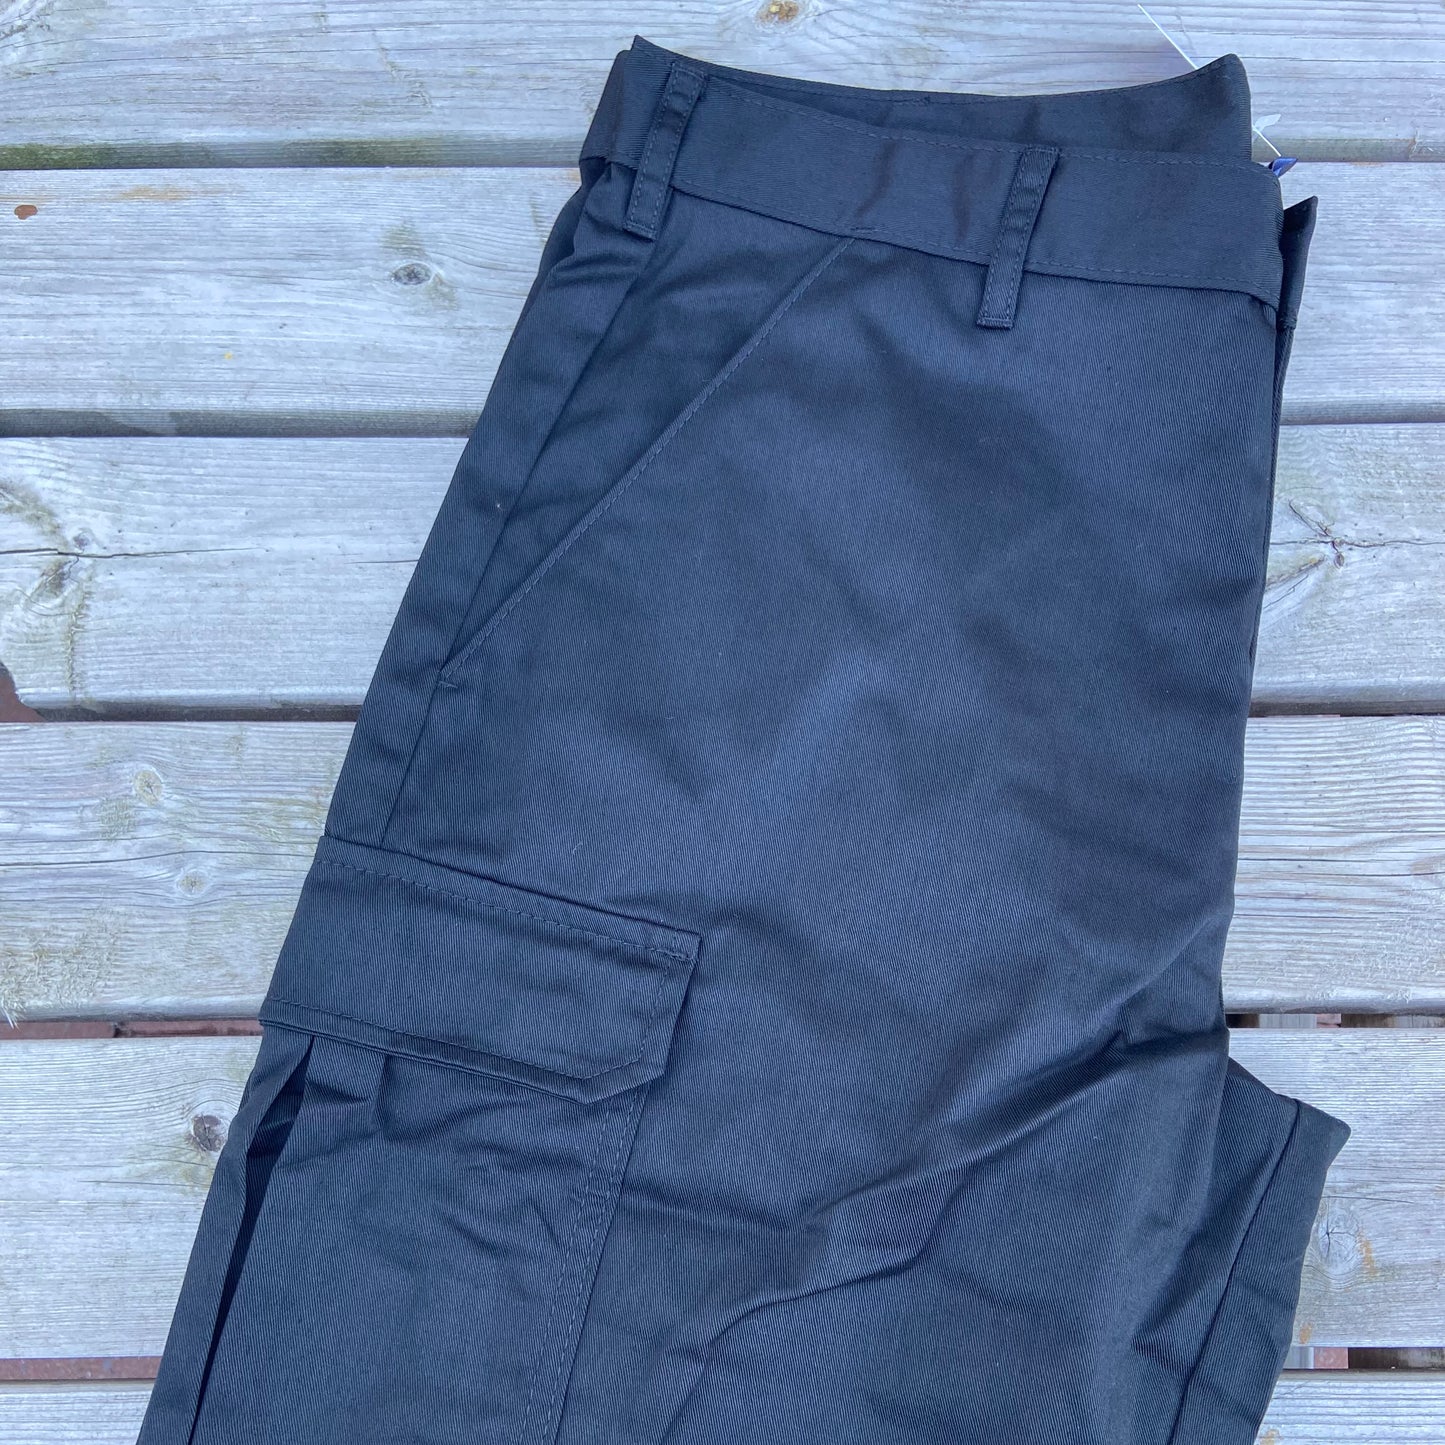 34" Regular Black Combat Trousers